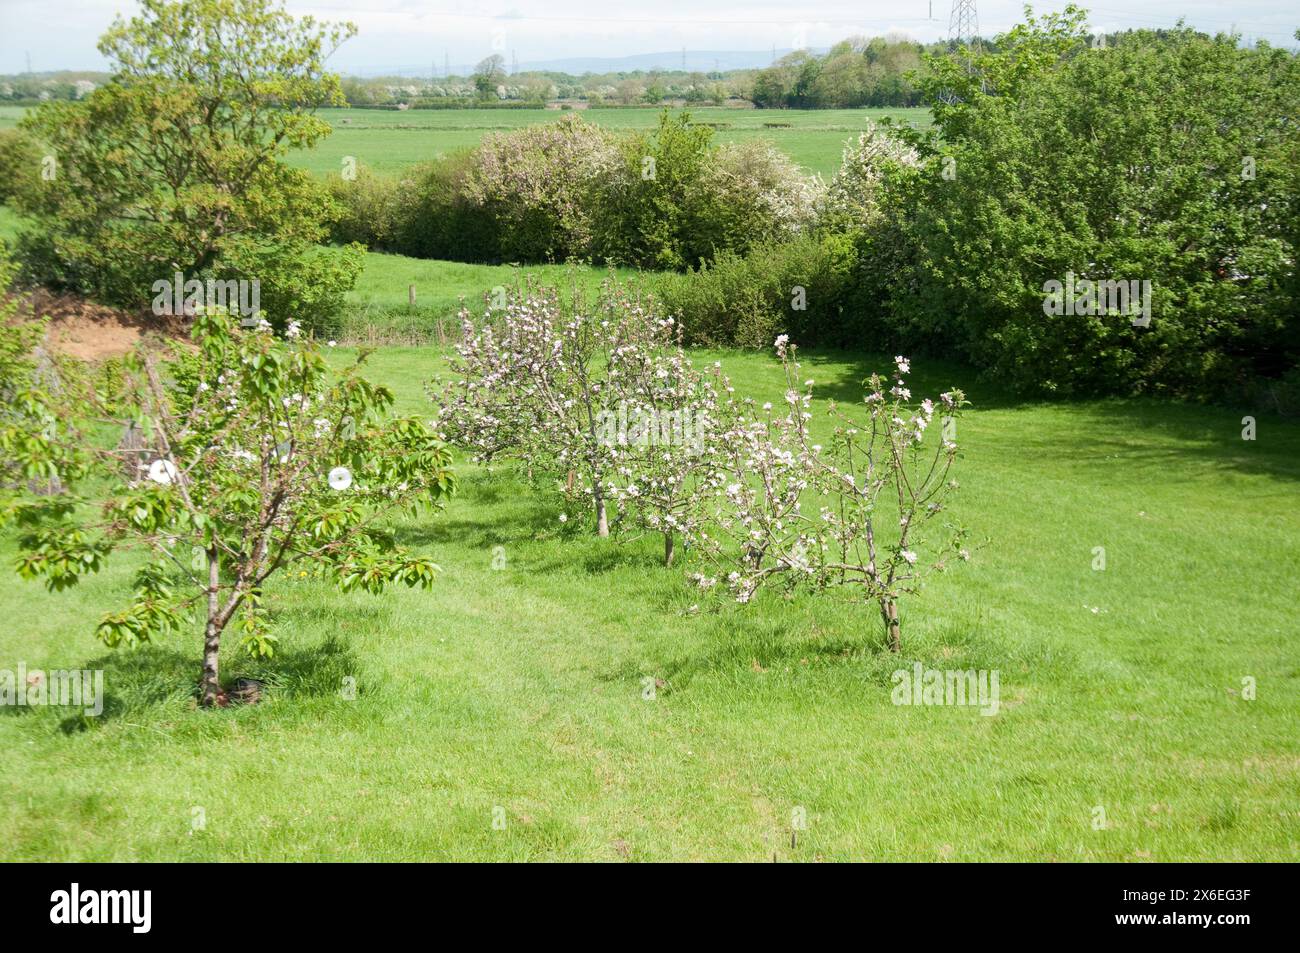 Paysage rural, Preston, Lancashire, Royaume-Uni. Champs, arbres, arbres fruitiers ; verger ; coutnryside; végétation verte ; herbe verte; Banque D'Images